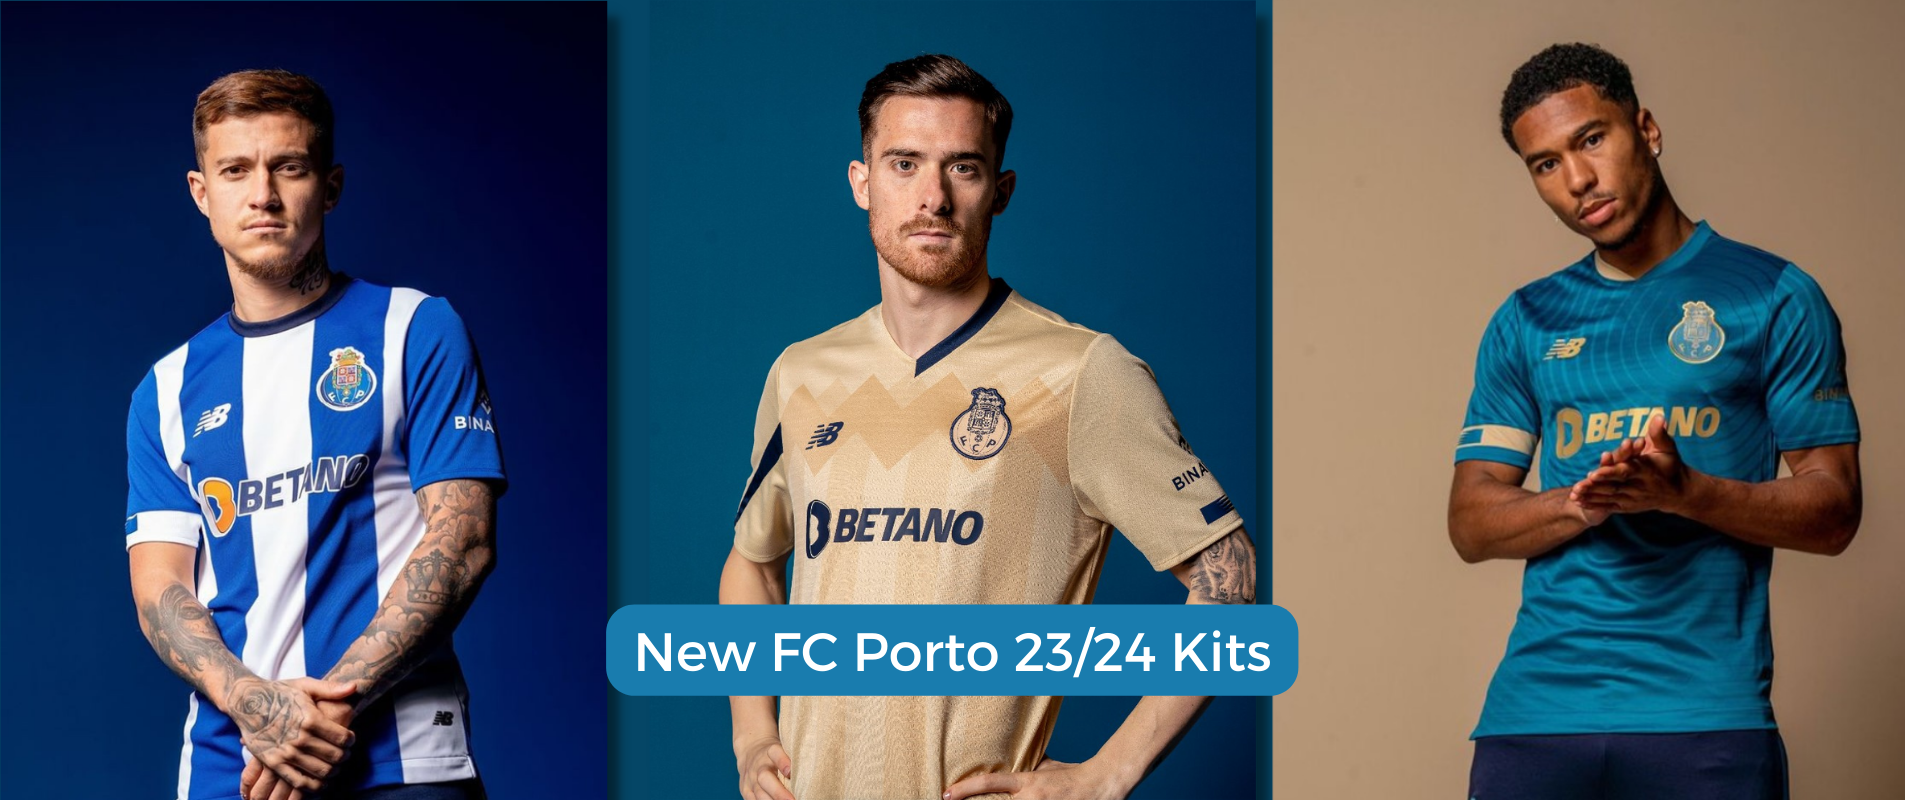 Esboço do FC Porto 2023/24: saídas e entradas confirmadas, quem